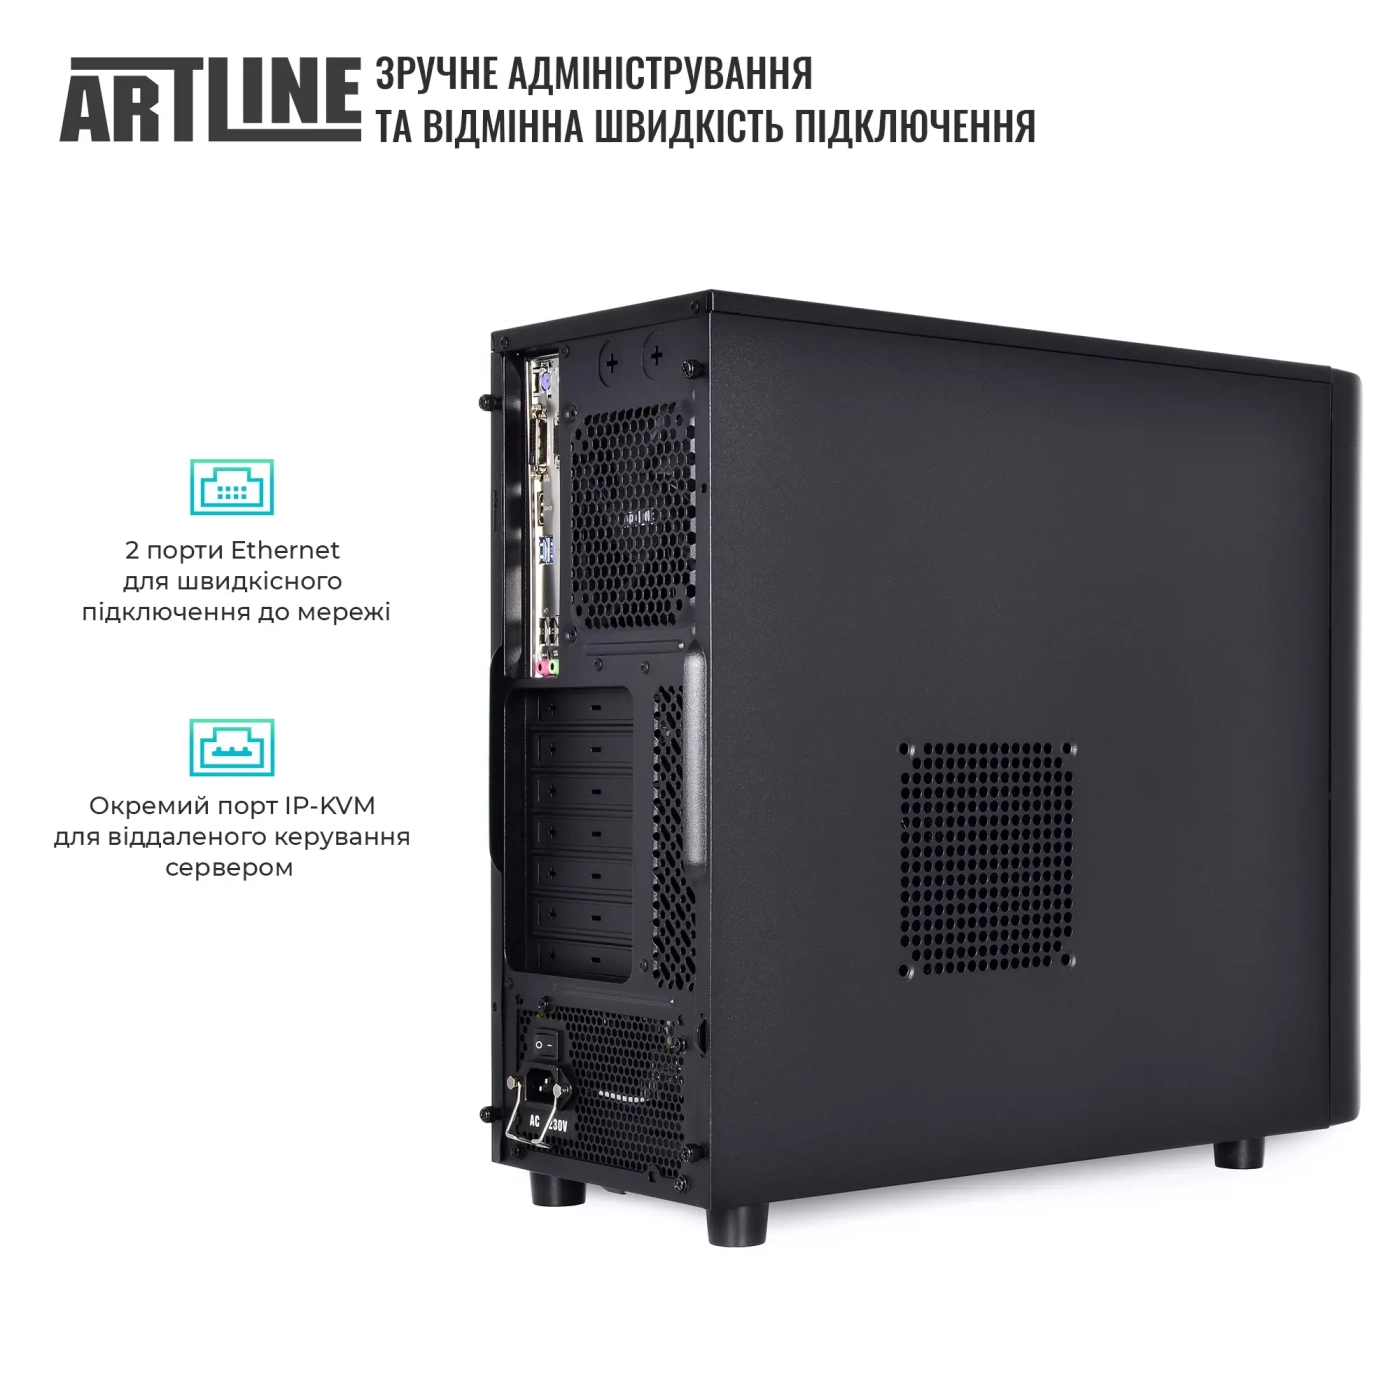 Купить Сервер ARTLINE Business T34 (T34v21) - фото 4